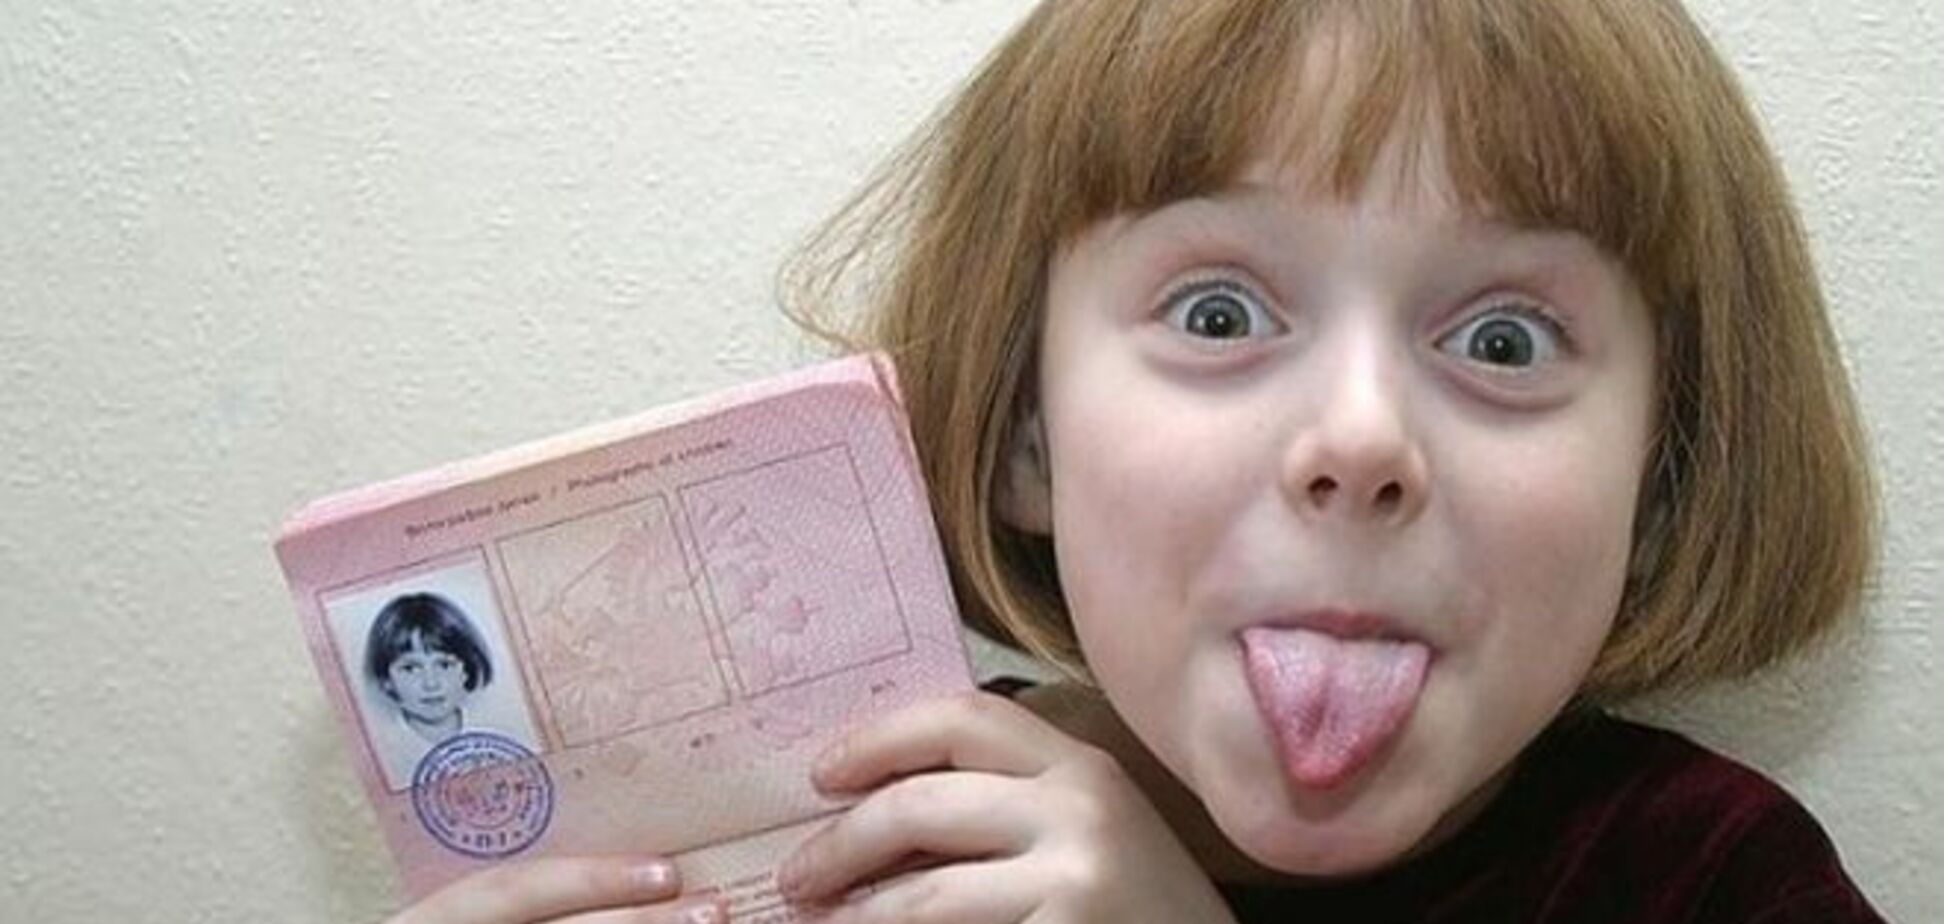 Міграційна служба: в дитячих закордонних паспортах не буде відбитків пальців